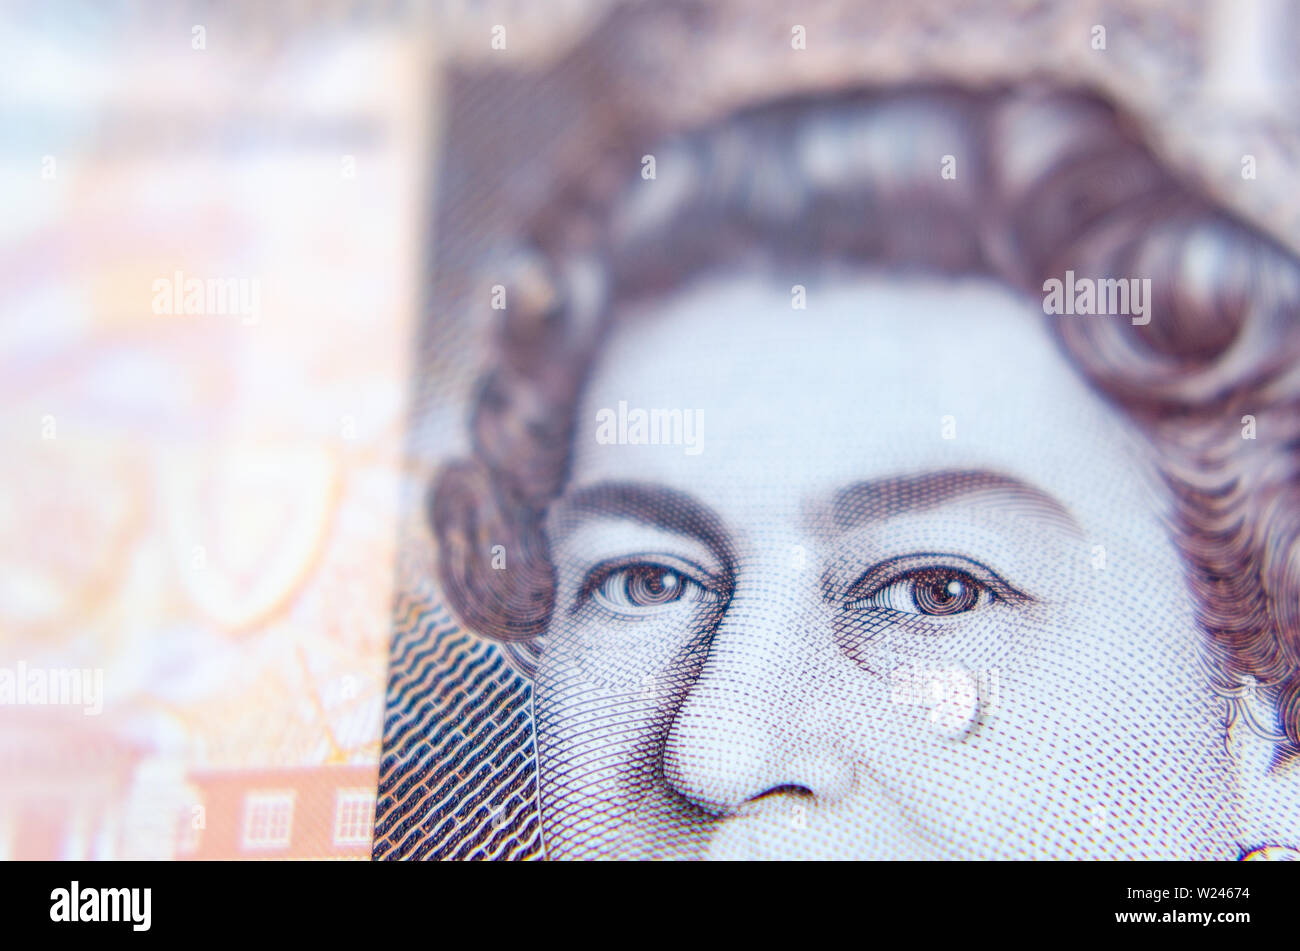 Foto macro della banconota da sterlina britannica con una goccia d'acqua come lacrima sul volto della Regina. Foto concettuale. Foto Stock